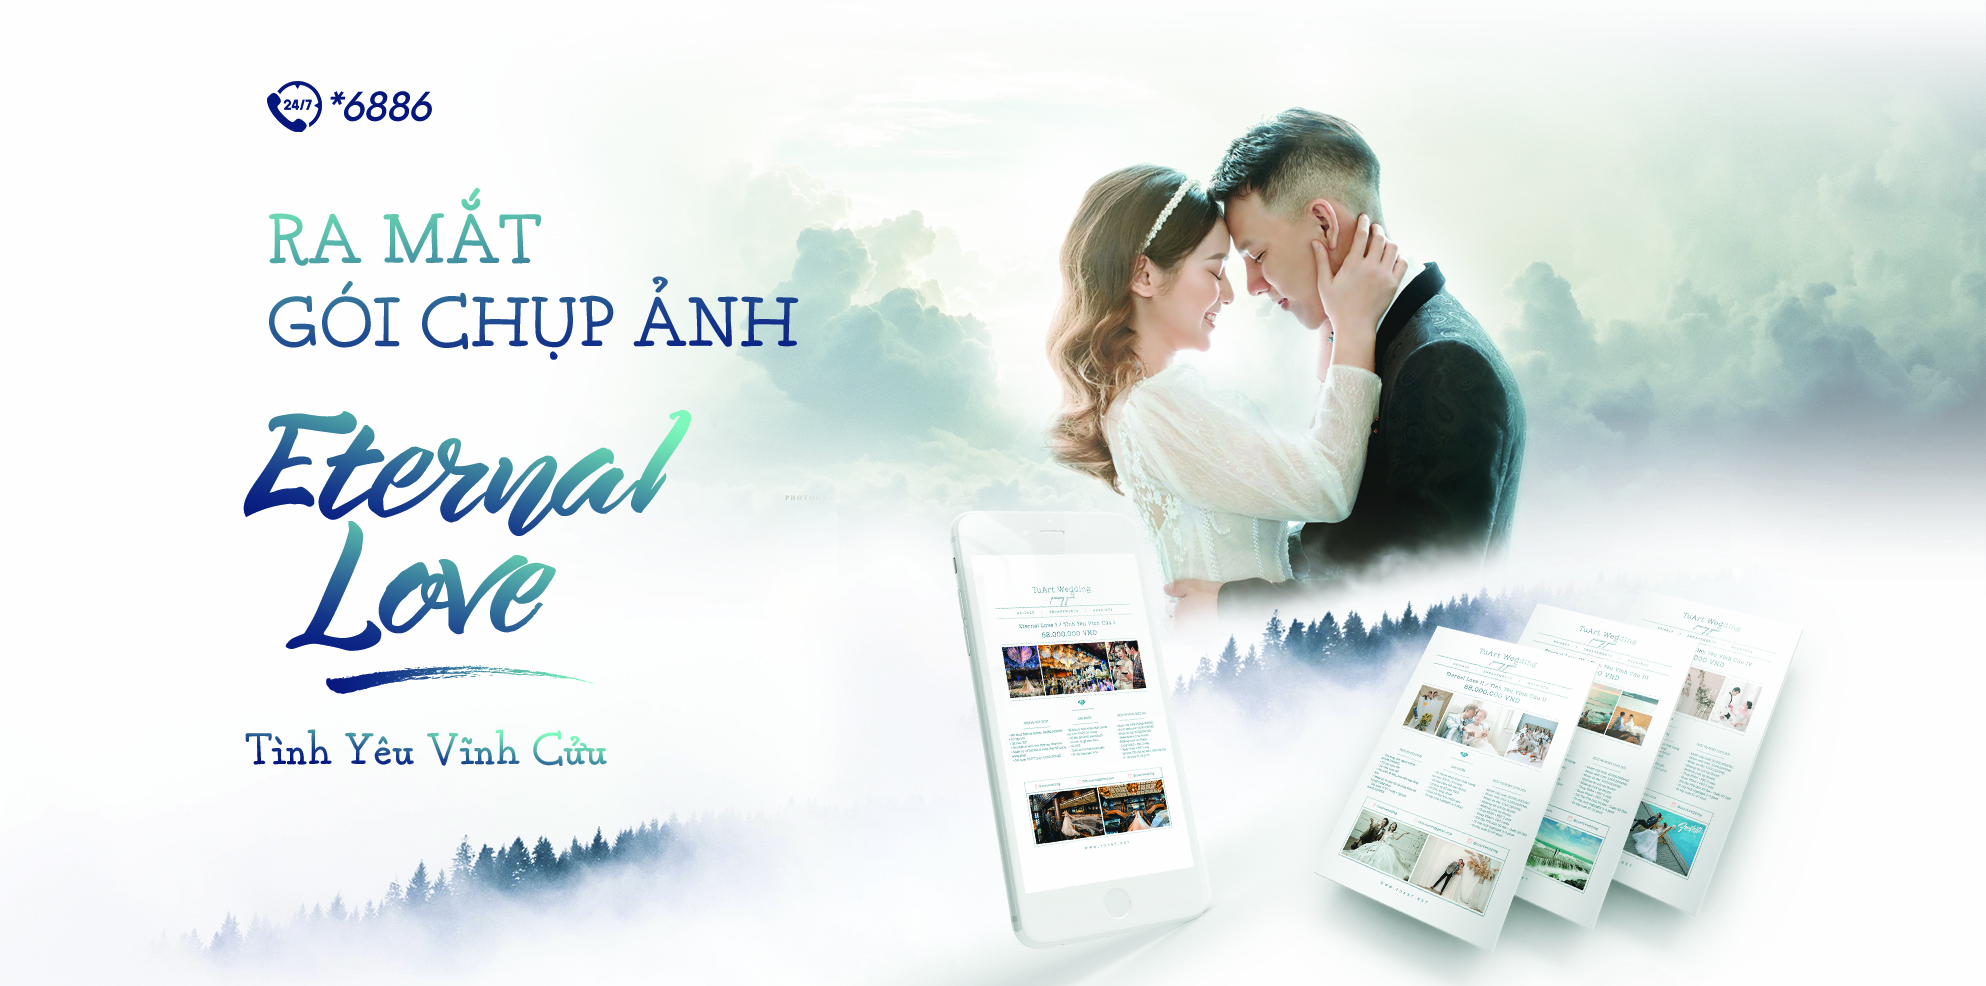 Giật mình dịch vụ chụp ảnh cưới đầu tiên tại Việt Nam hoàn tiền 100% gói chụp tới 118 triệu đồng!